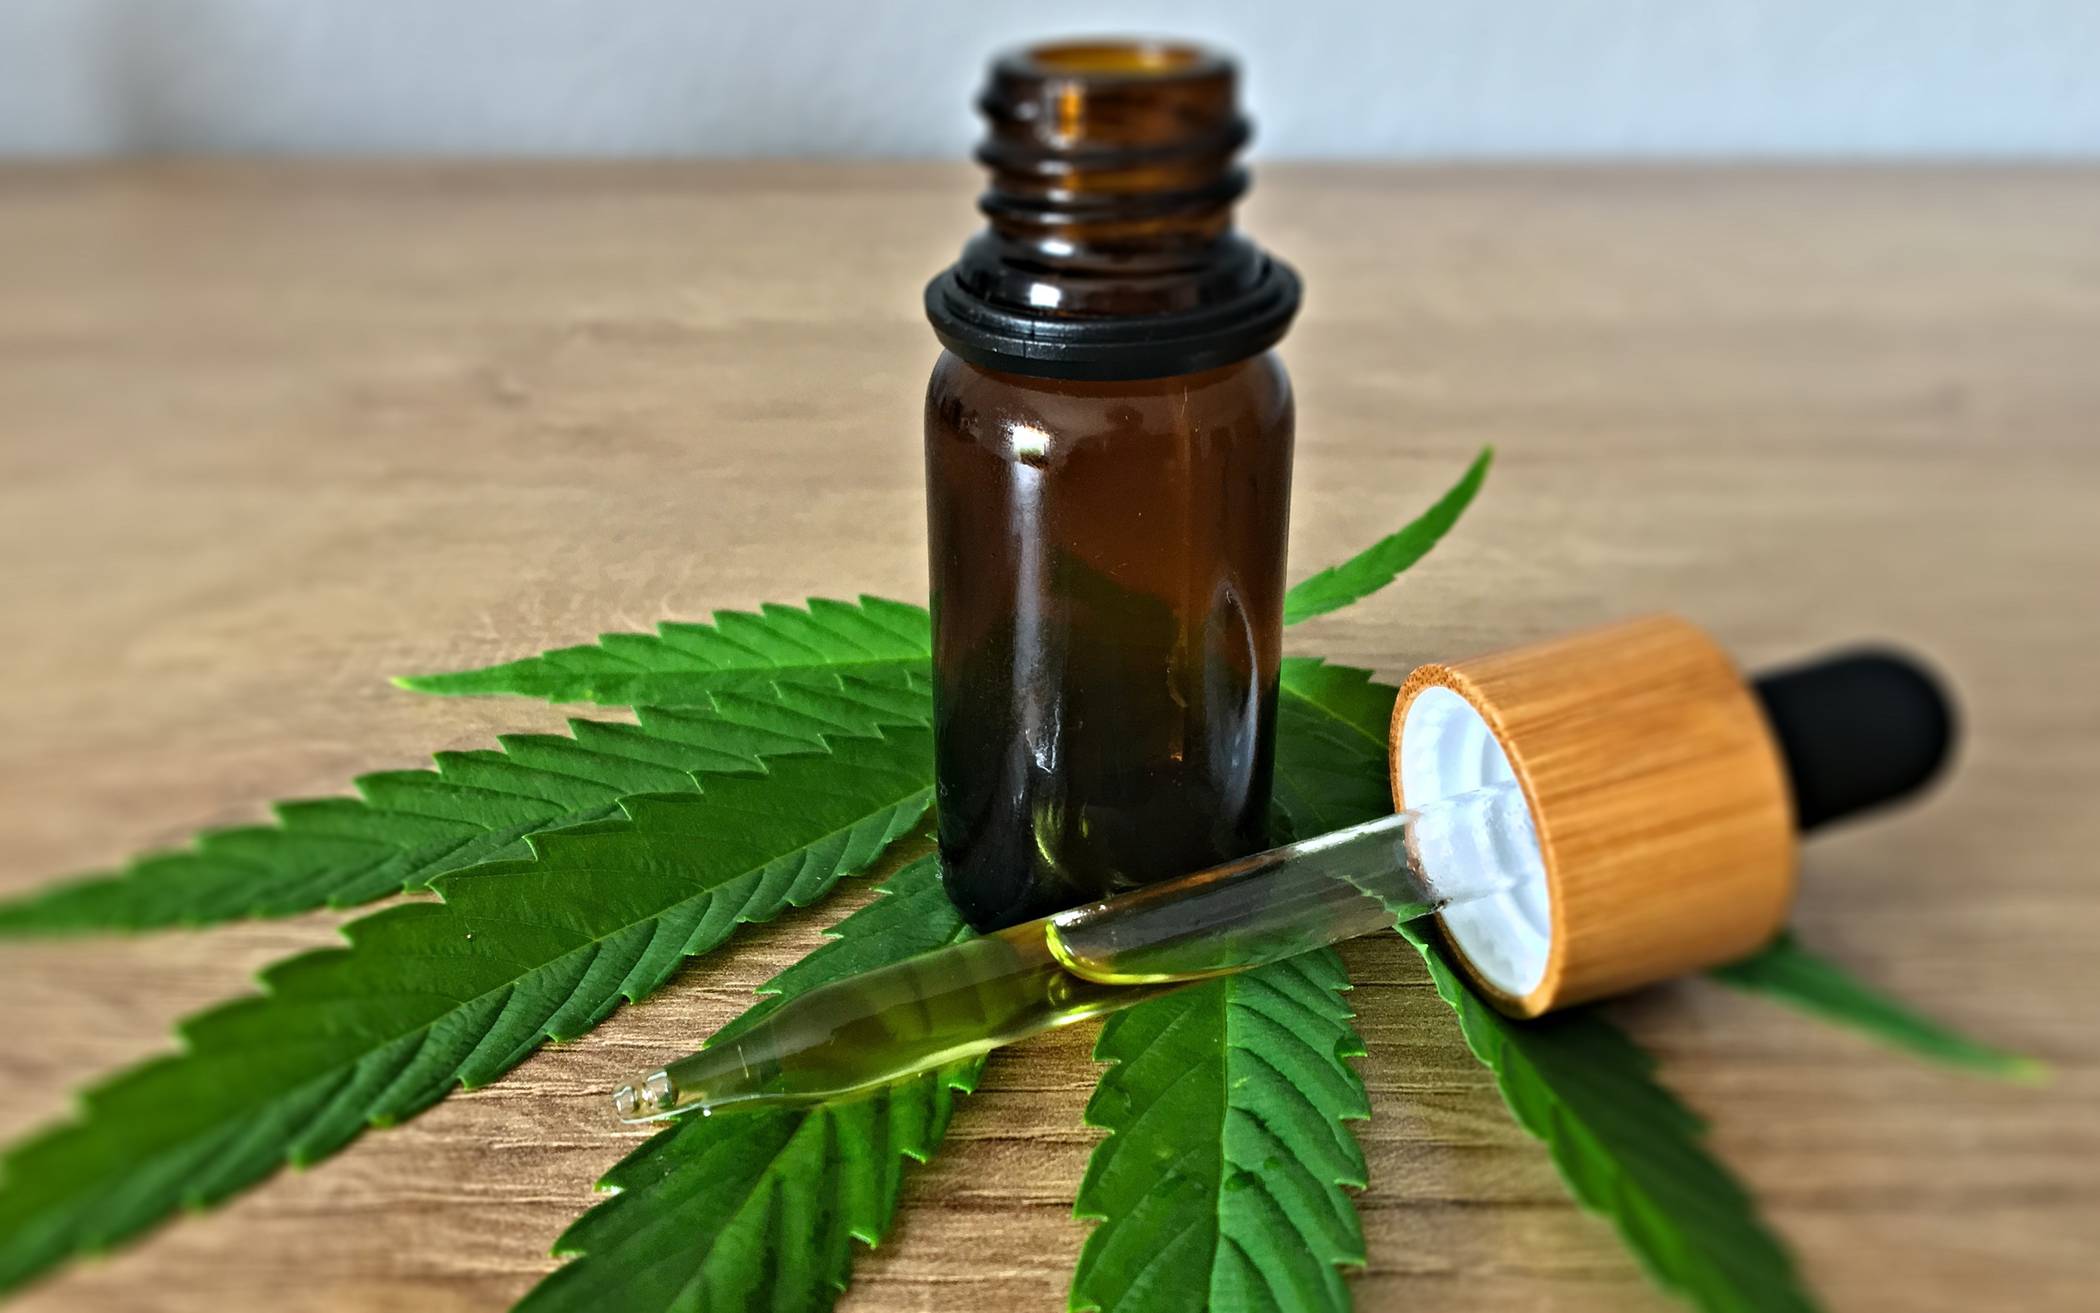  Die Ärztekammer Nordrhein in Düsseldorf spricht sich erneut gegen die von der Bundesregierung angetrebte kontrollierte Cannabis-Freigabe zum nichtmedizinischen Gebrauch aus.  